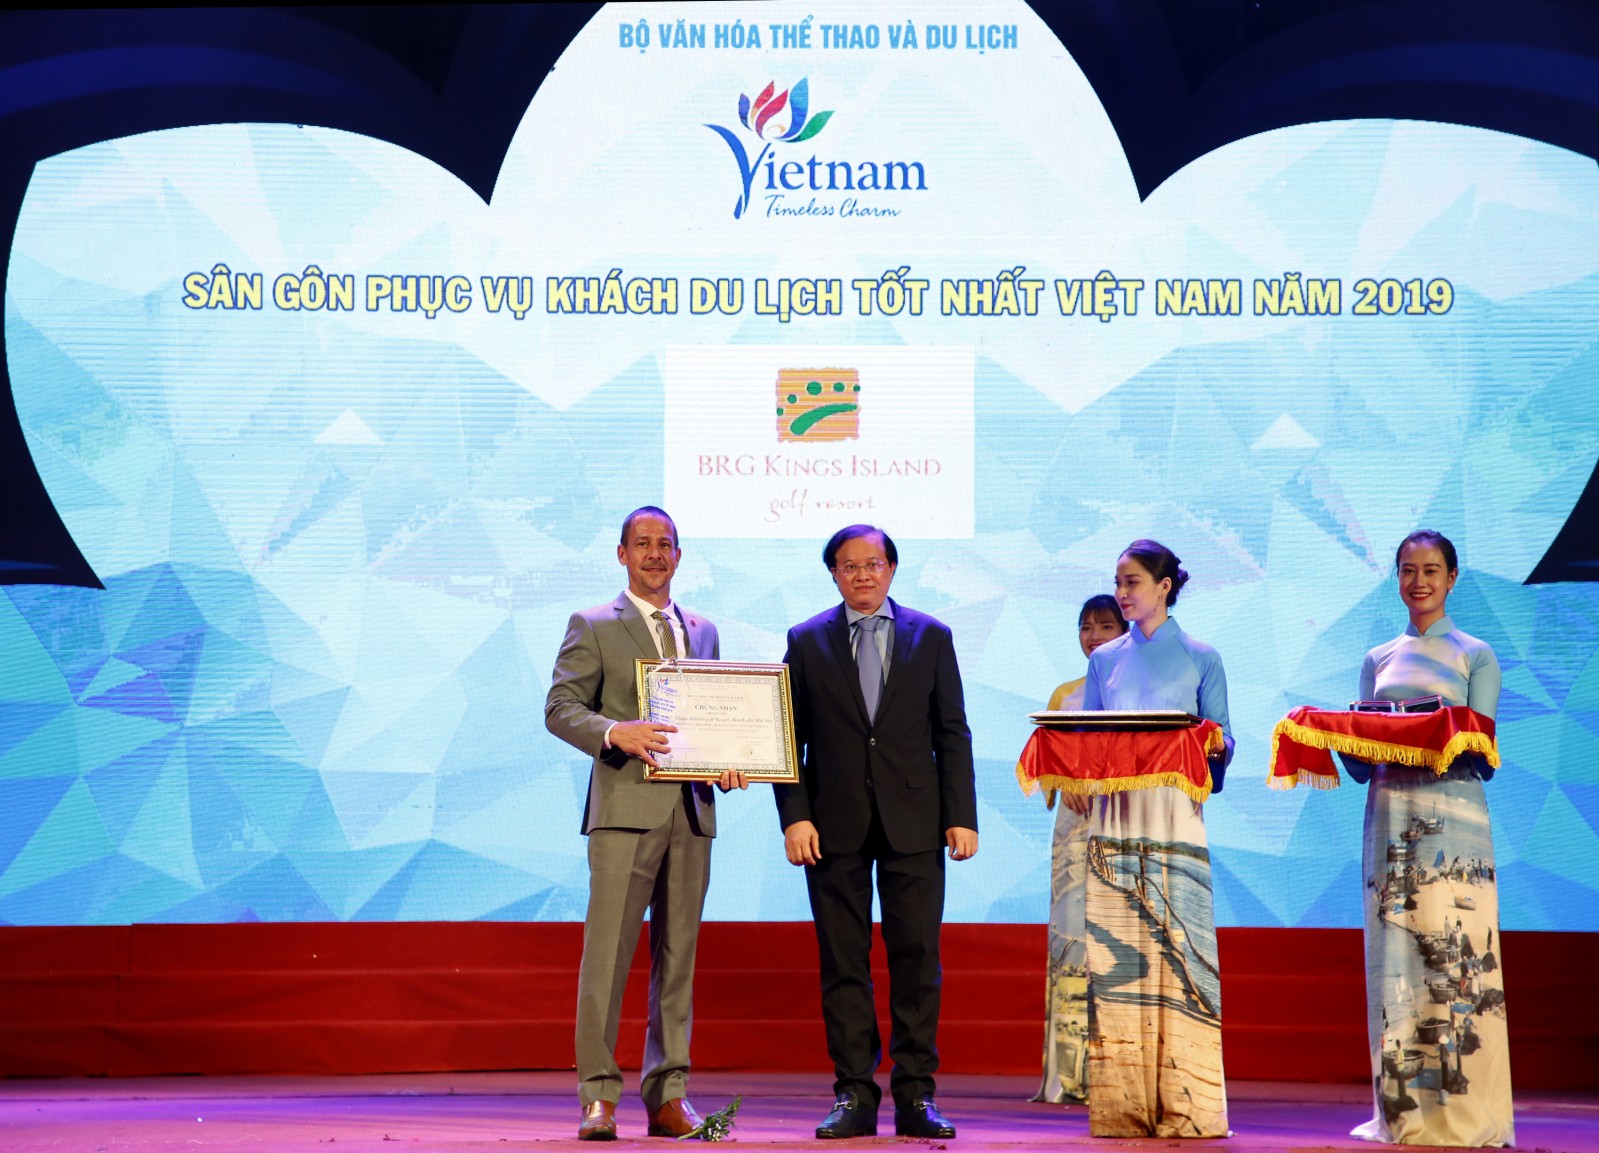 Ông Evans Mahoney nhận giải sân gôn phục vụ khách du lịch tốt nhất Việt Nam 2019 cho sân BRG Kings Island Golf Resort